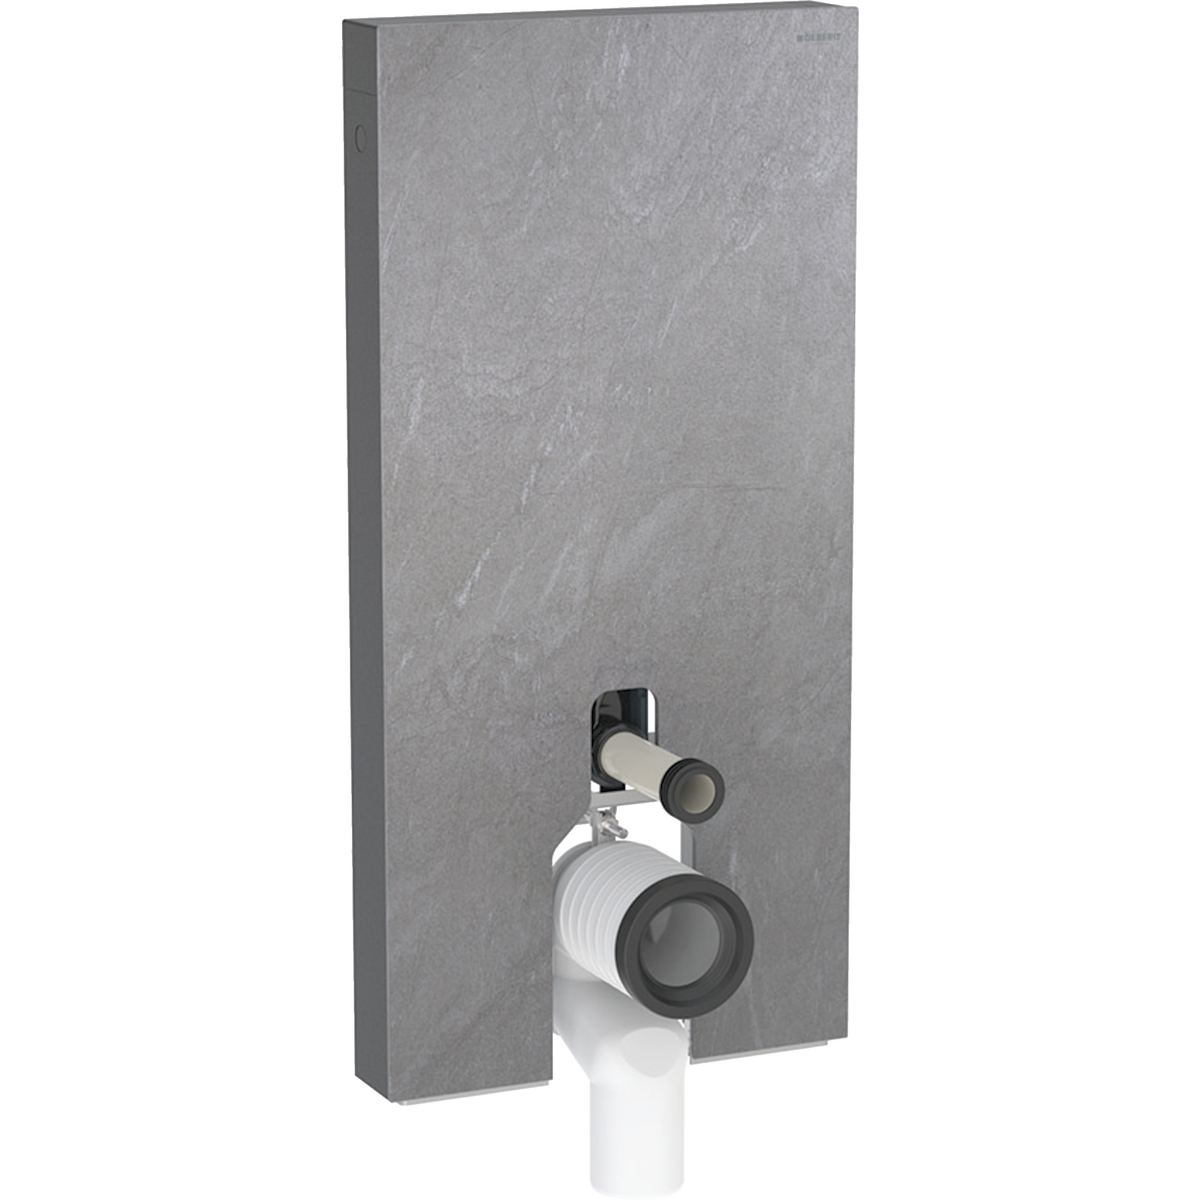 Monolith Sanitärmodul für Stand-WC, 101 cm, Frontverkleidung aus Steinzeug: Steinzeug Schieferoptik, Aluminium schwarzchrom